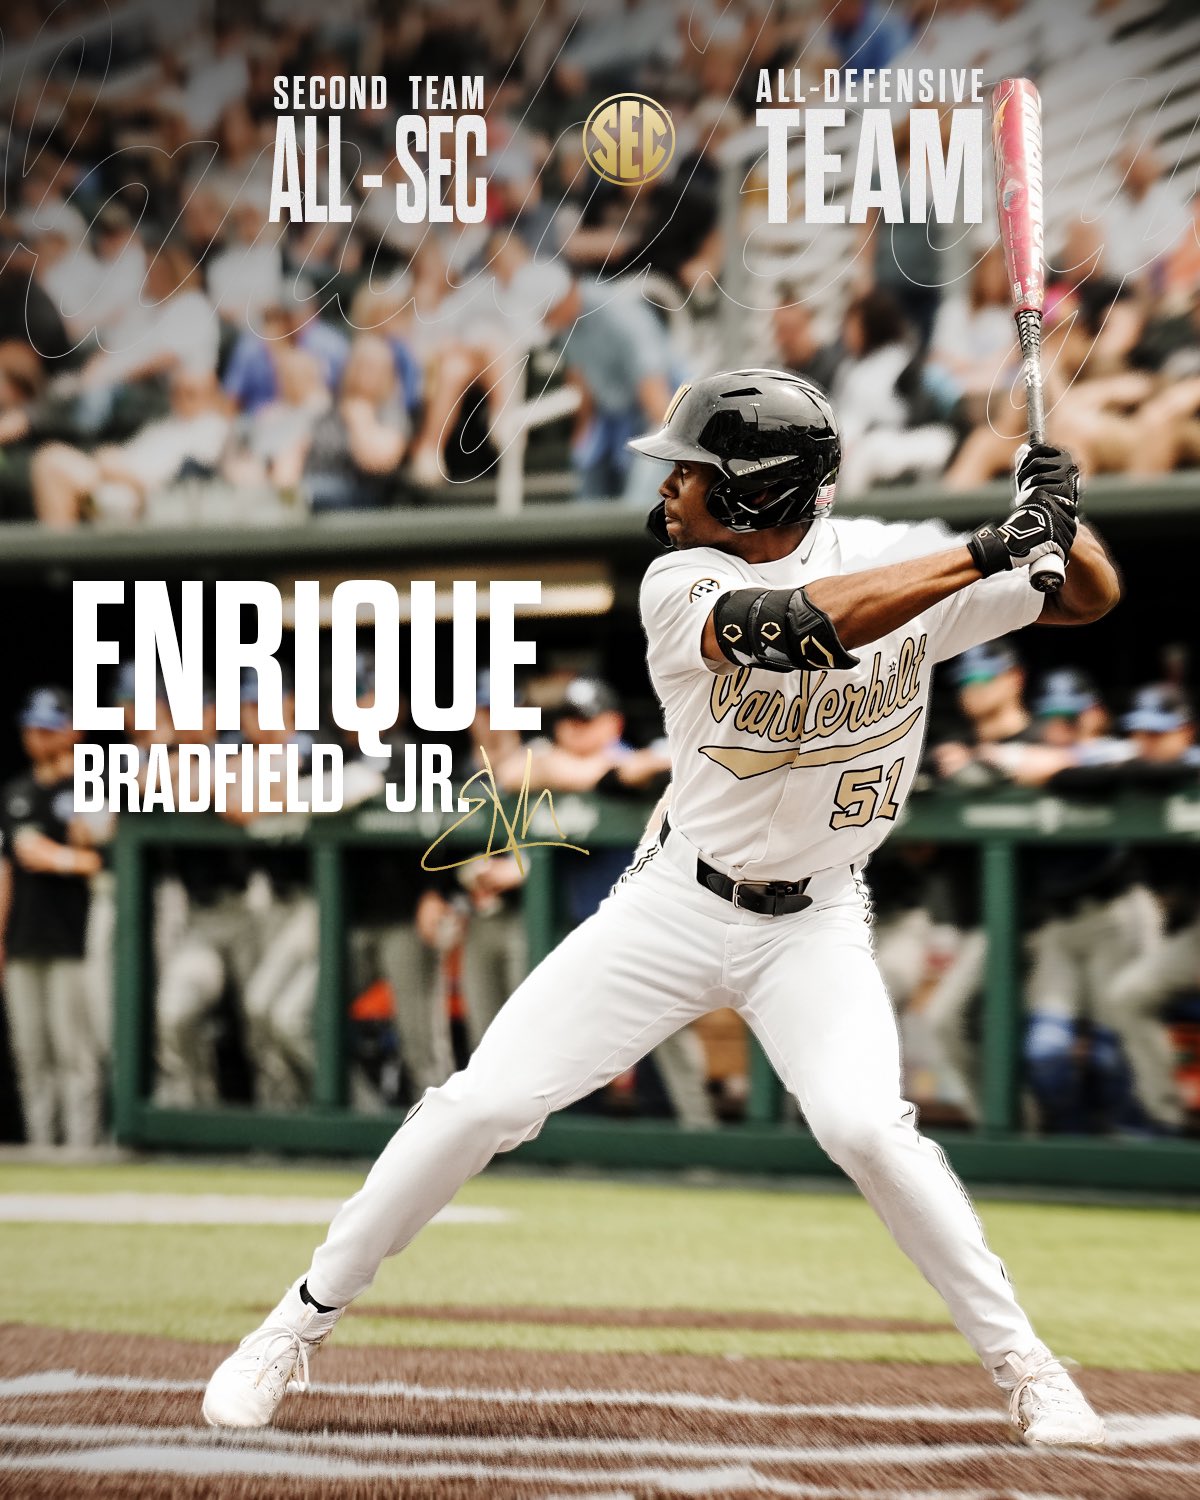 Vanderbilt Baseball on X: 𝐀𝐥𝐥-𝐒𝐄𝐂 honors for @EBradfield20. 🏆  #VandyBoys